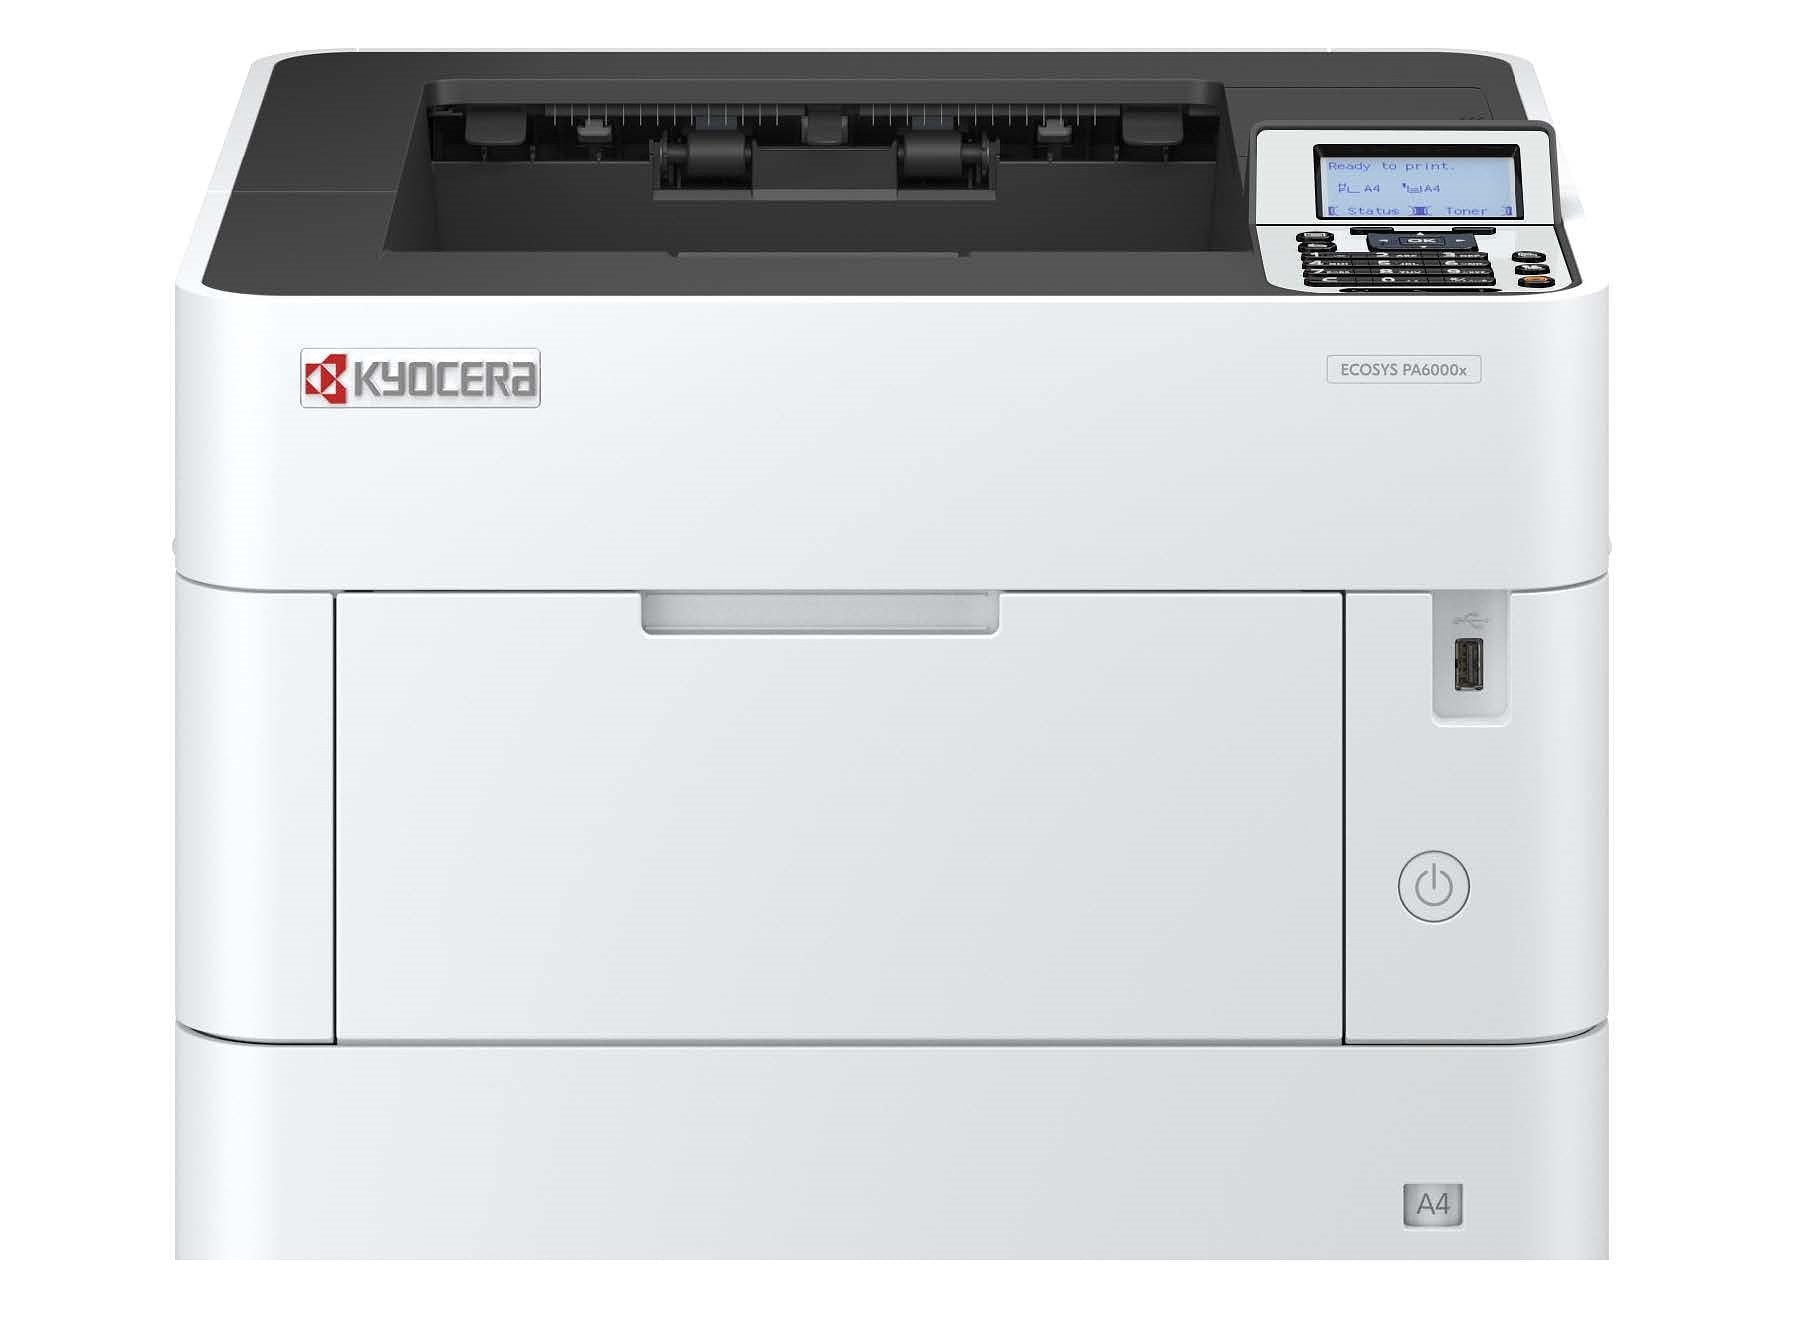 Kyocera ECOSYS PA6000x -  Laserprinter A4 - Zwart-wit - 416x410x363mm